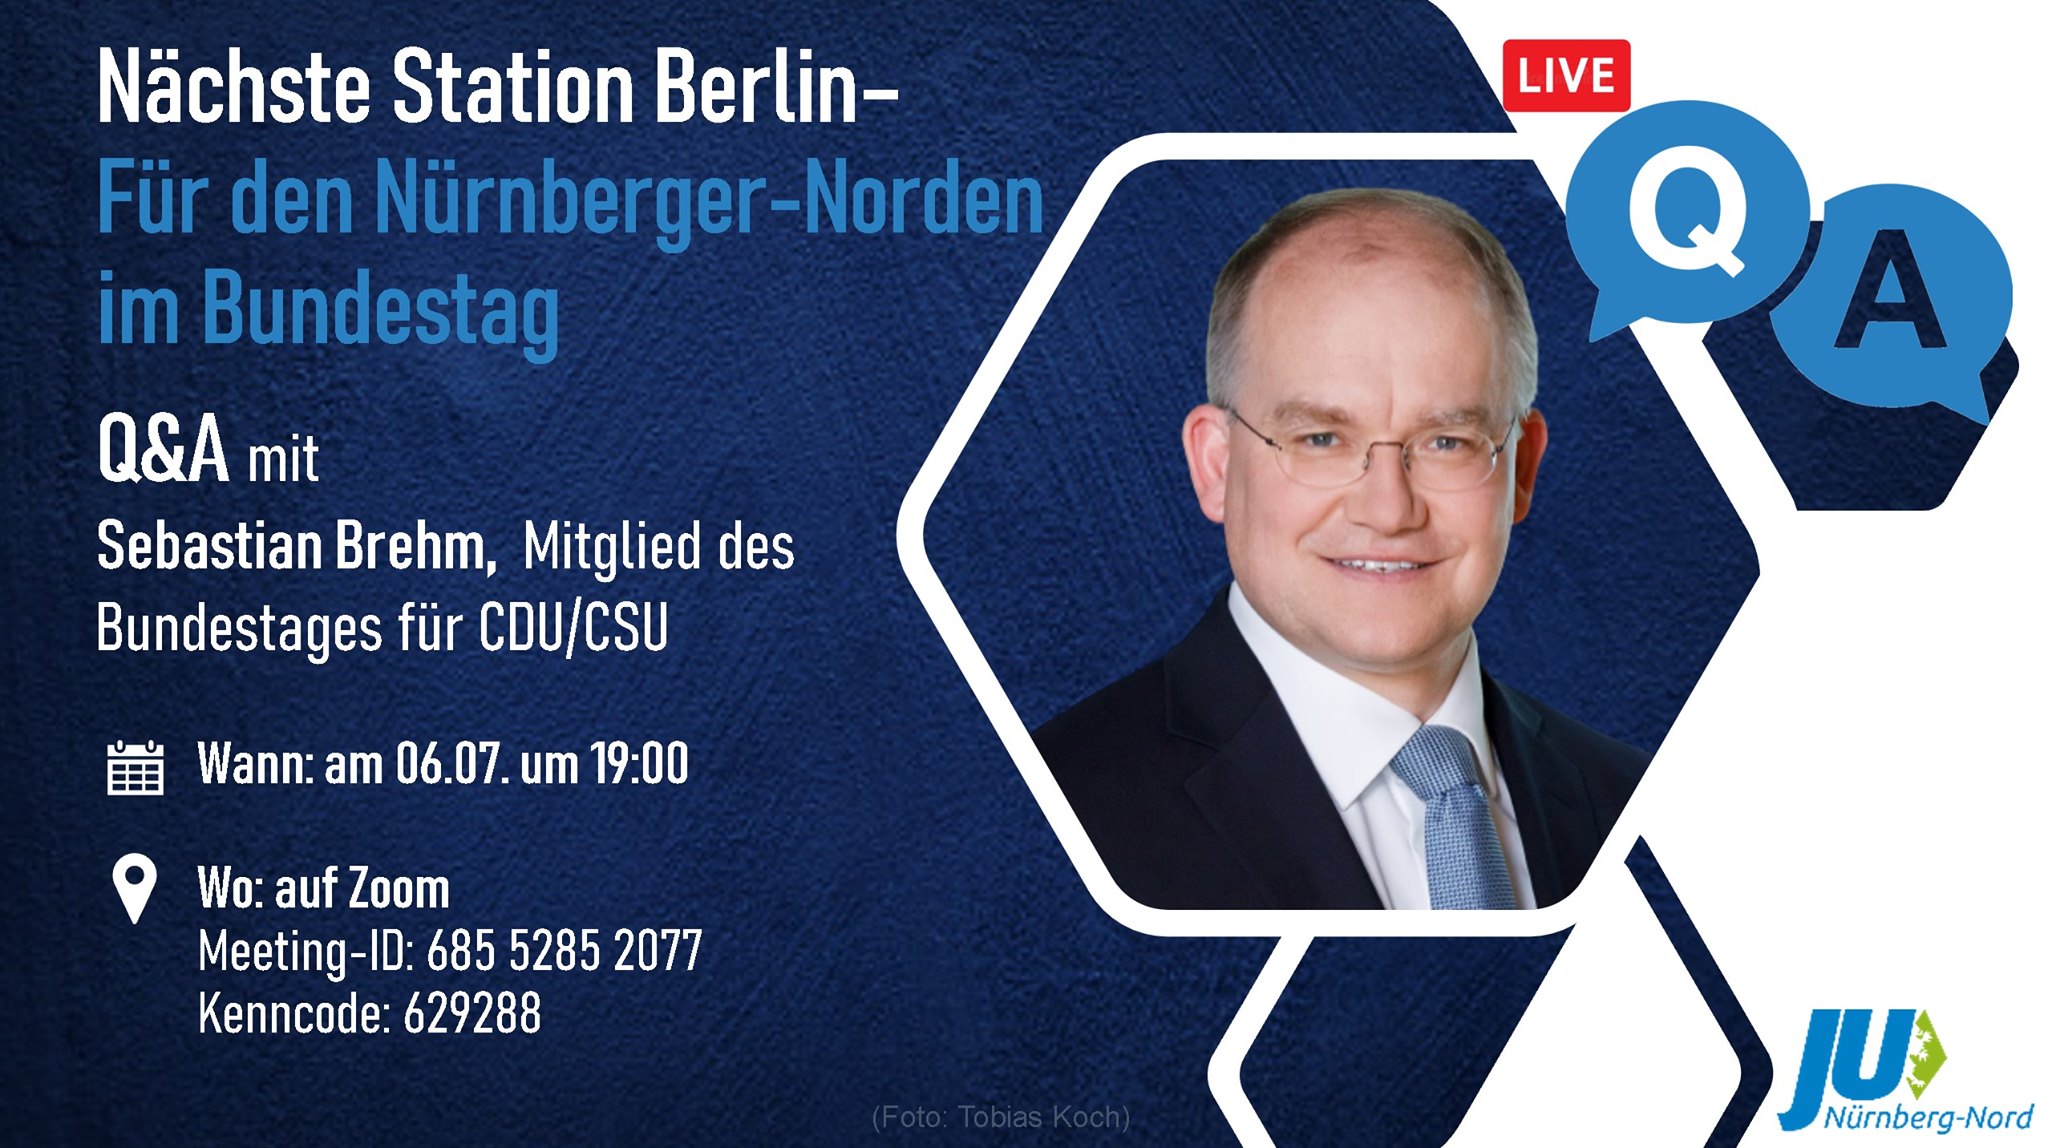 Bild zur Veranstaltung Für den Nürnberger Norden im Bundestag - Q&A mit Sebastian Brehm, Mitglied des Bundestages CSU/CDU